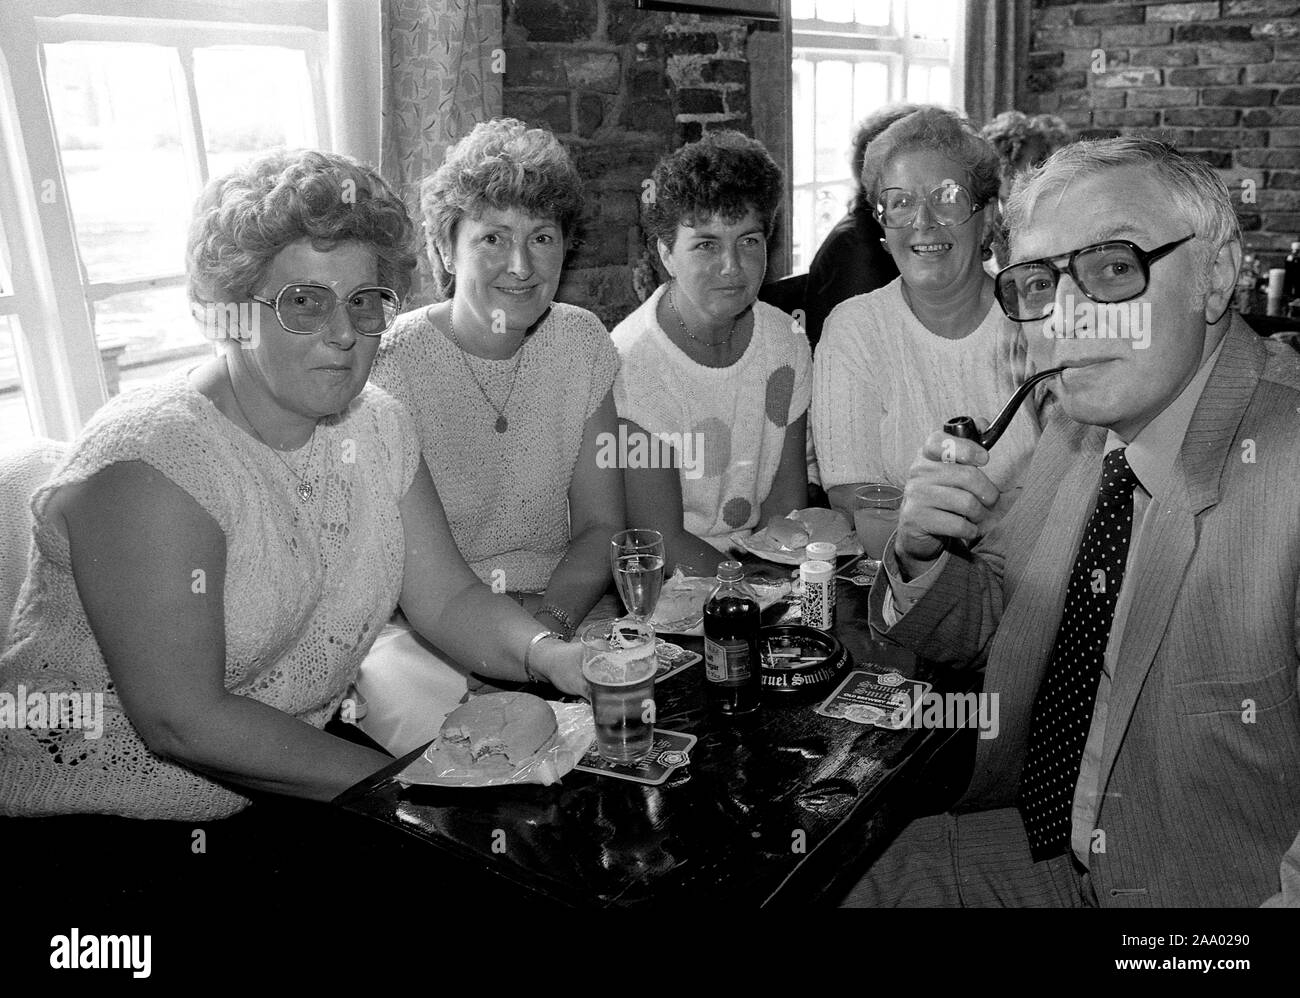 Der Mensch seine Pfeife rauchen von Damen in der Kneipe sah vor dem Rauchverbot Großbritannien, Großbritannien, 1985 Stockfoto